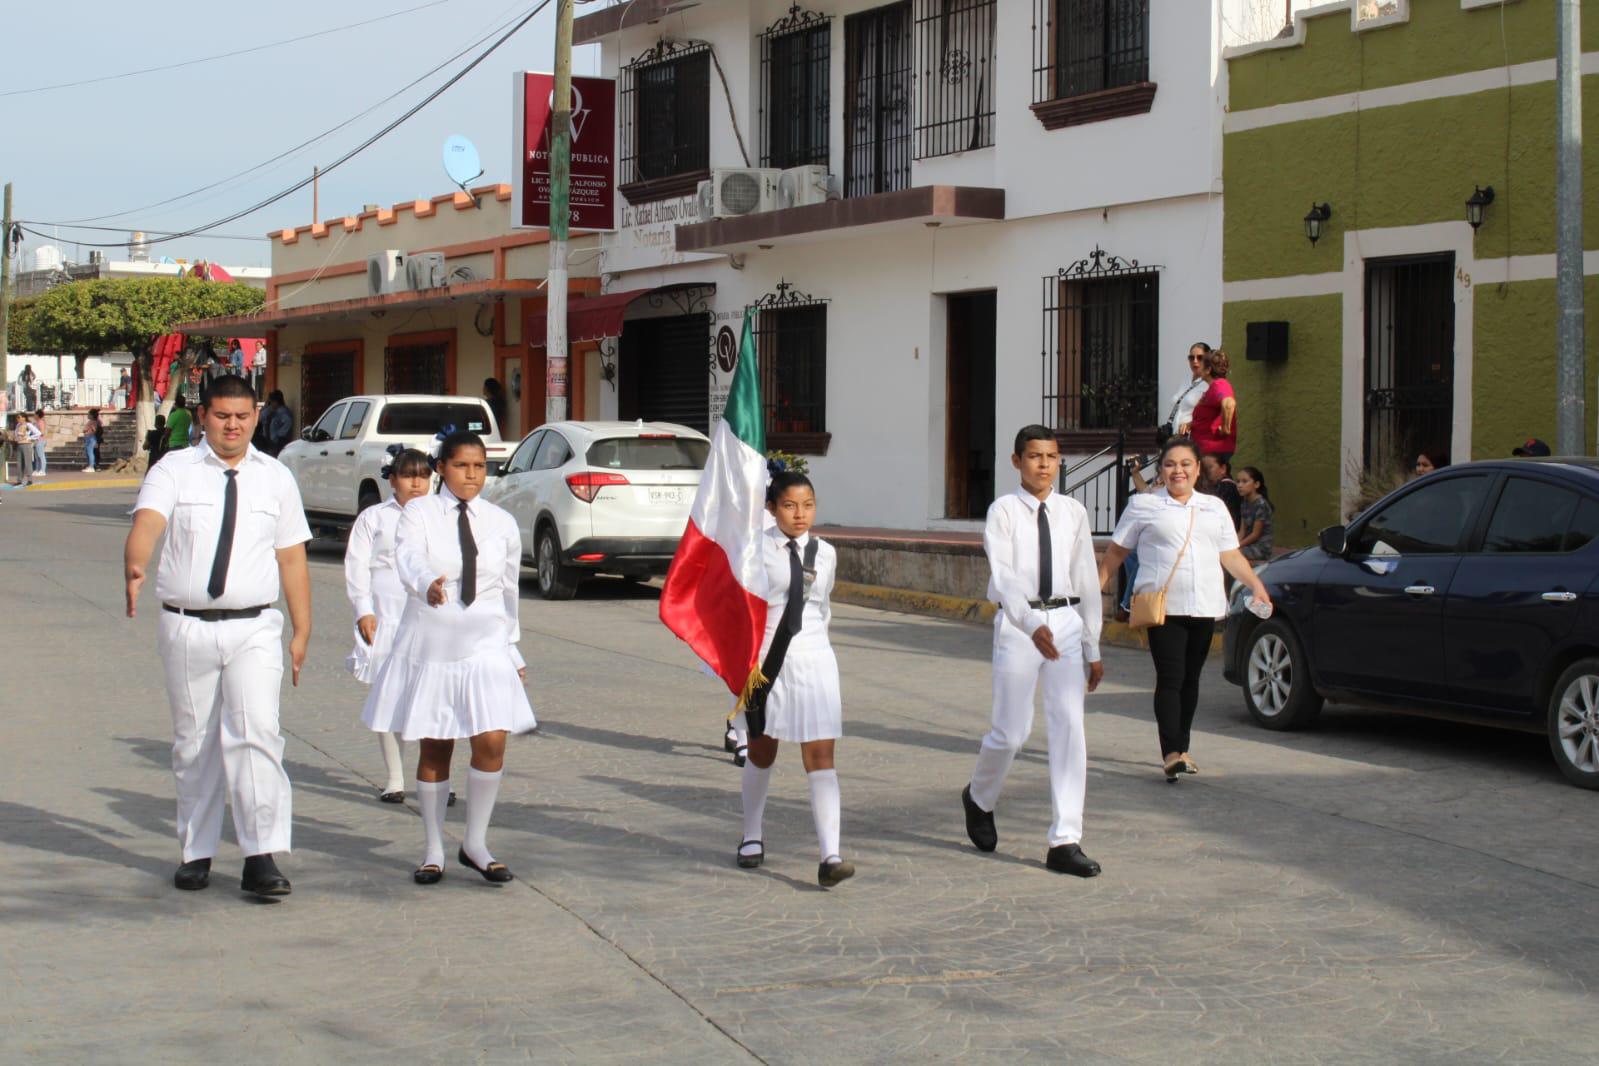 $!En Rosario celebran el Día de la Bandera con desfile y honores